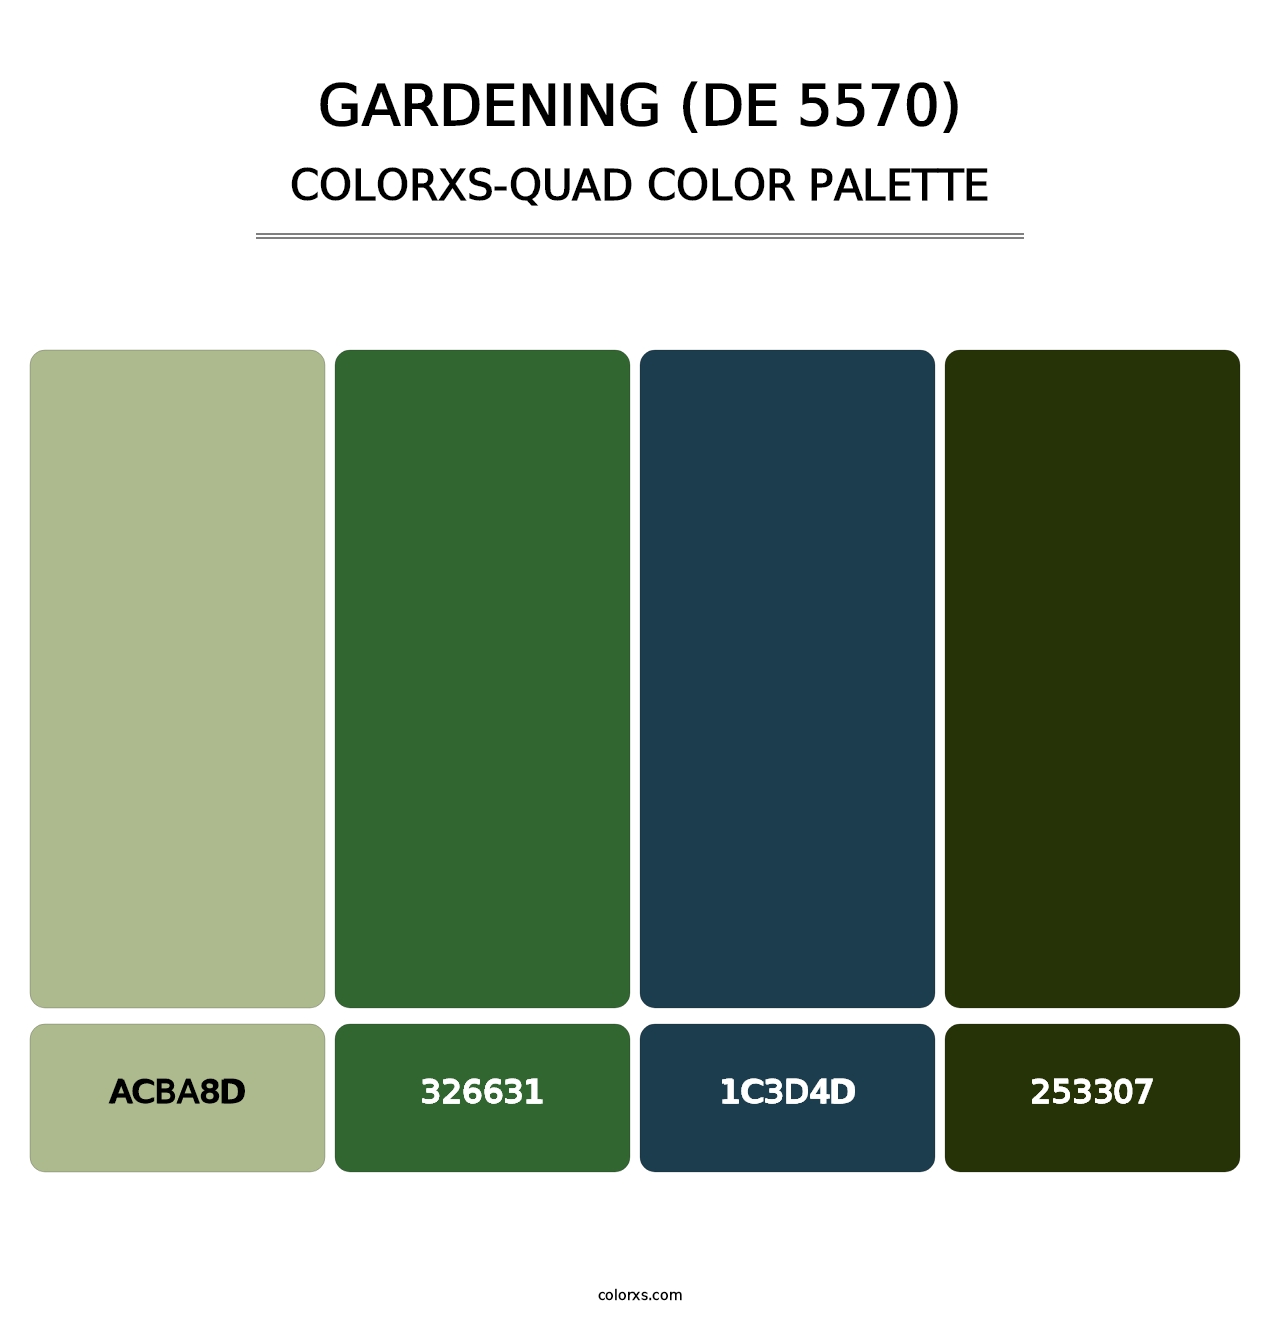 Gardening (DE 5570) - Colorxs Quad Palette